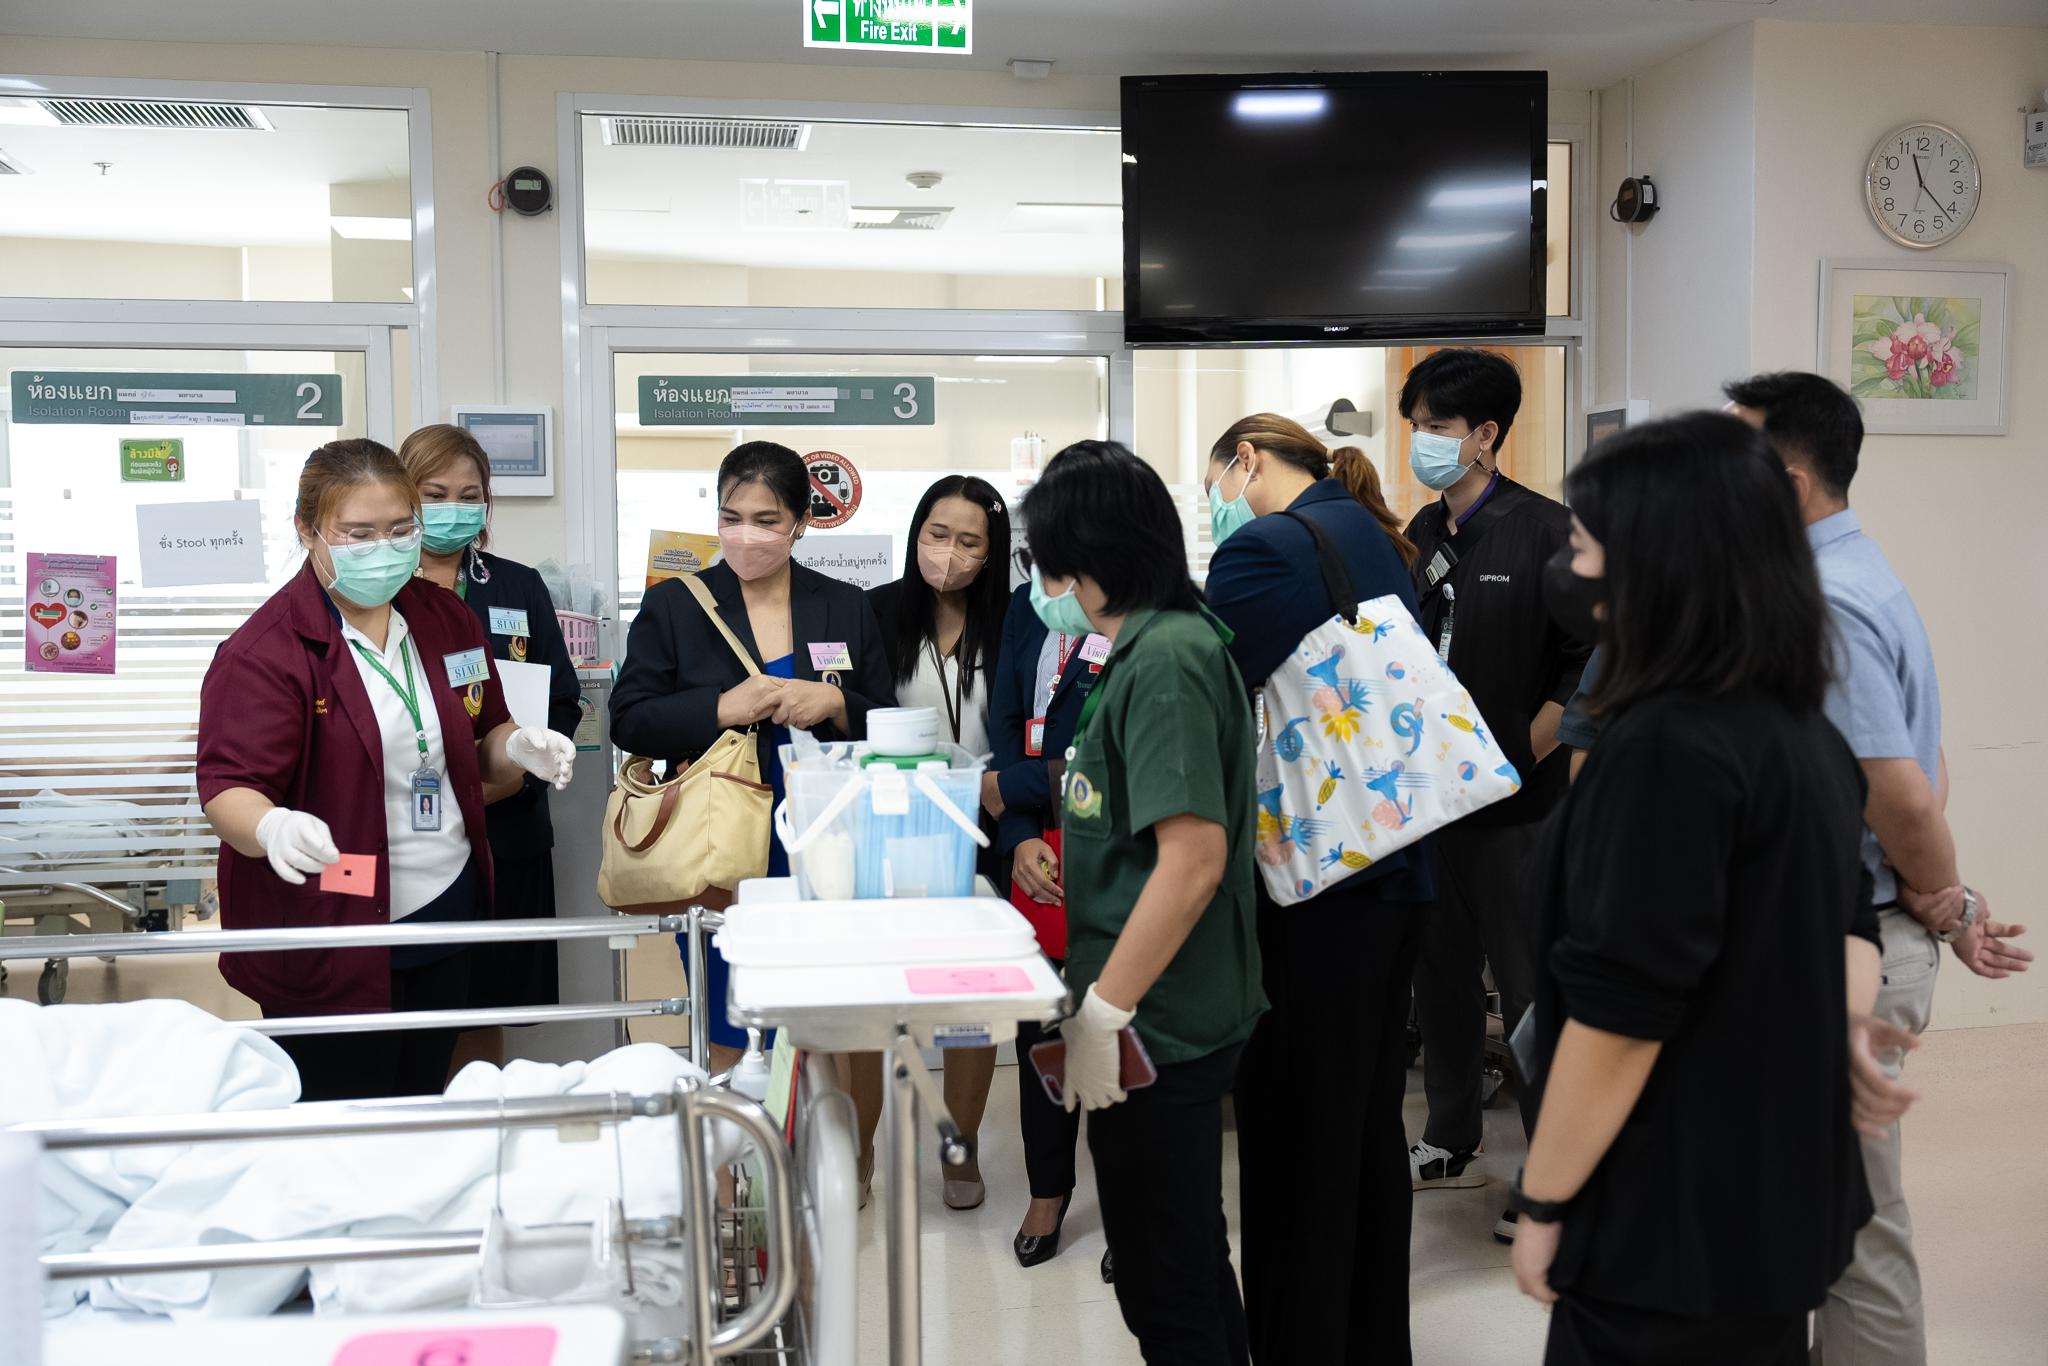 การประชุมการบริหารระบบกายภาพโรงพยาบาล 4 สถาบัน ครั้งที่ 2 